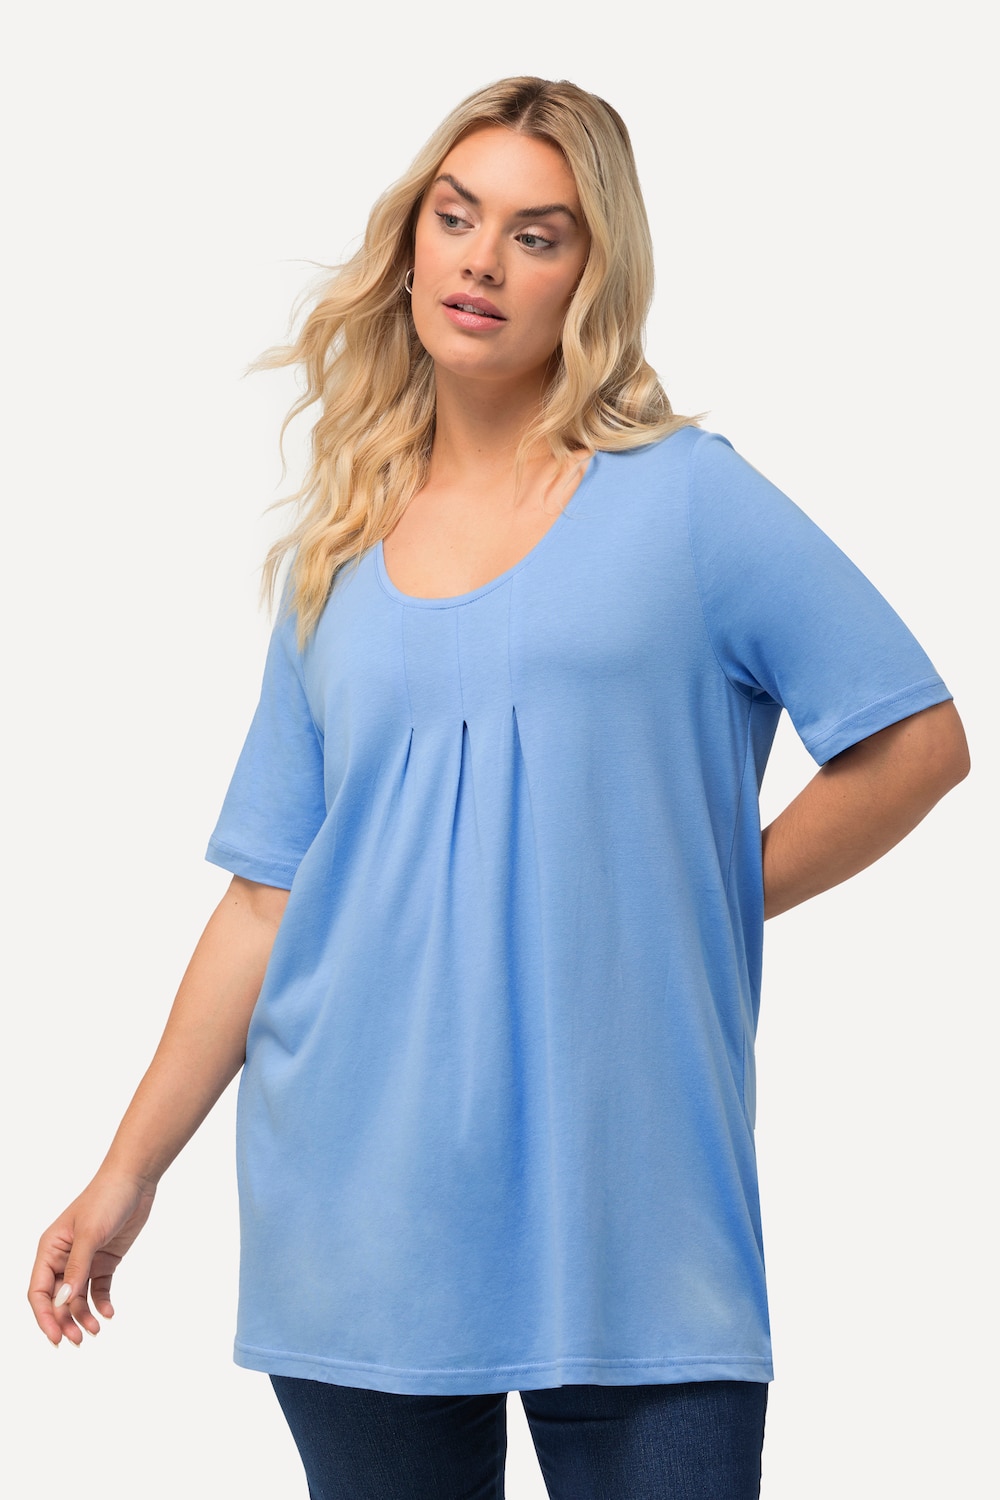 Grote Maten T-Shirt, Dames, blauw, Maat: 50/52, Katoen/Synthetische vezels, Ulla Popken